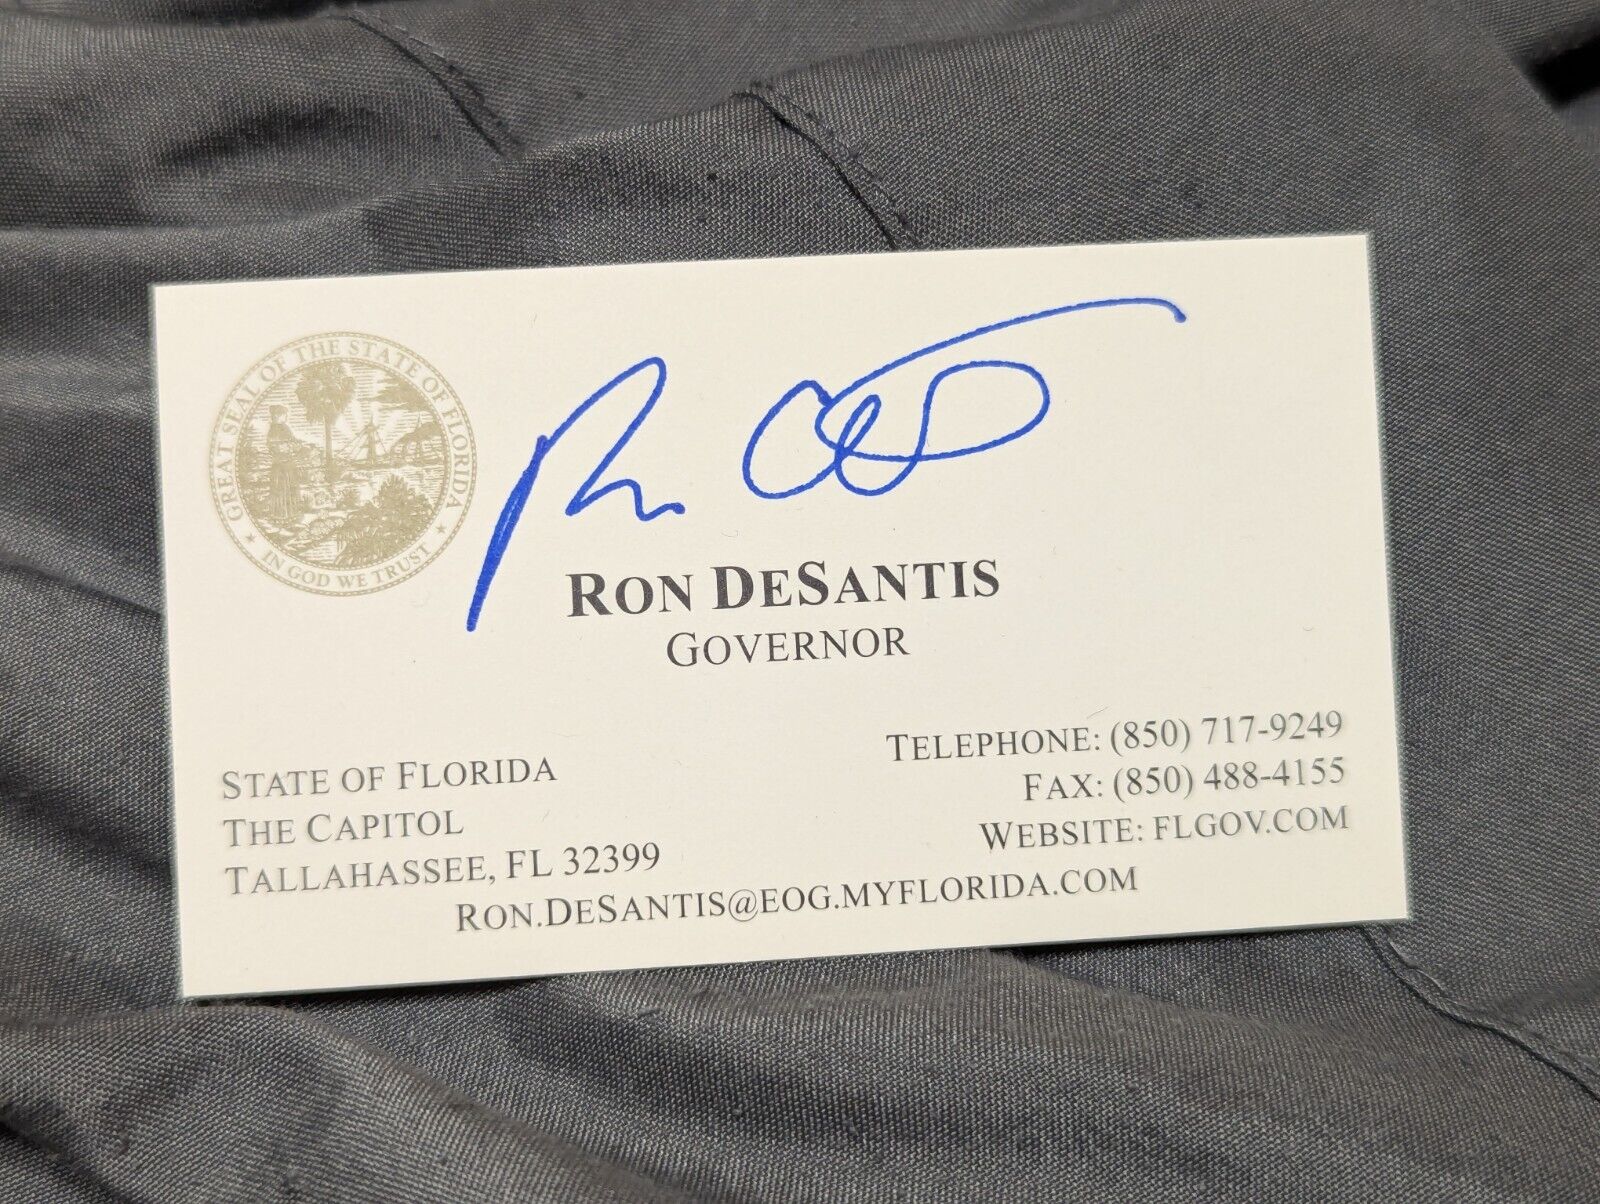 Ron DeSantis Governor of Florida AUTOPEN Autographed Business Card